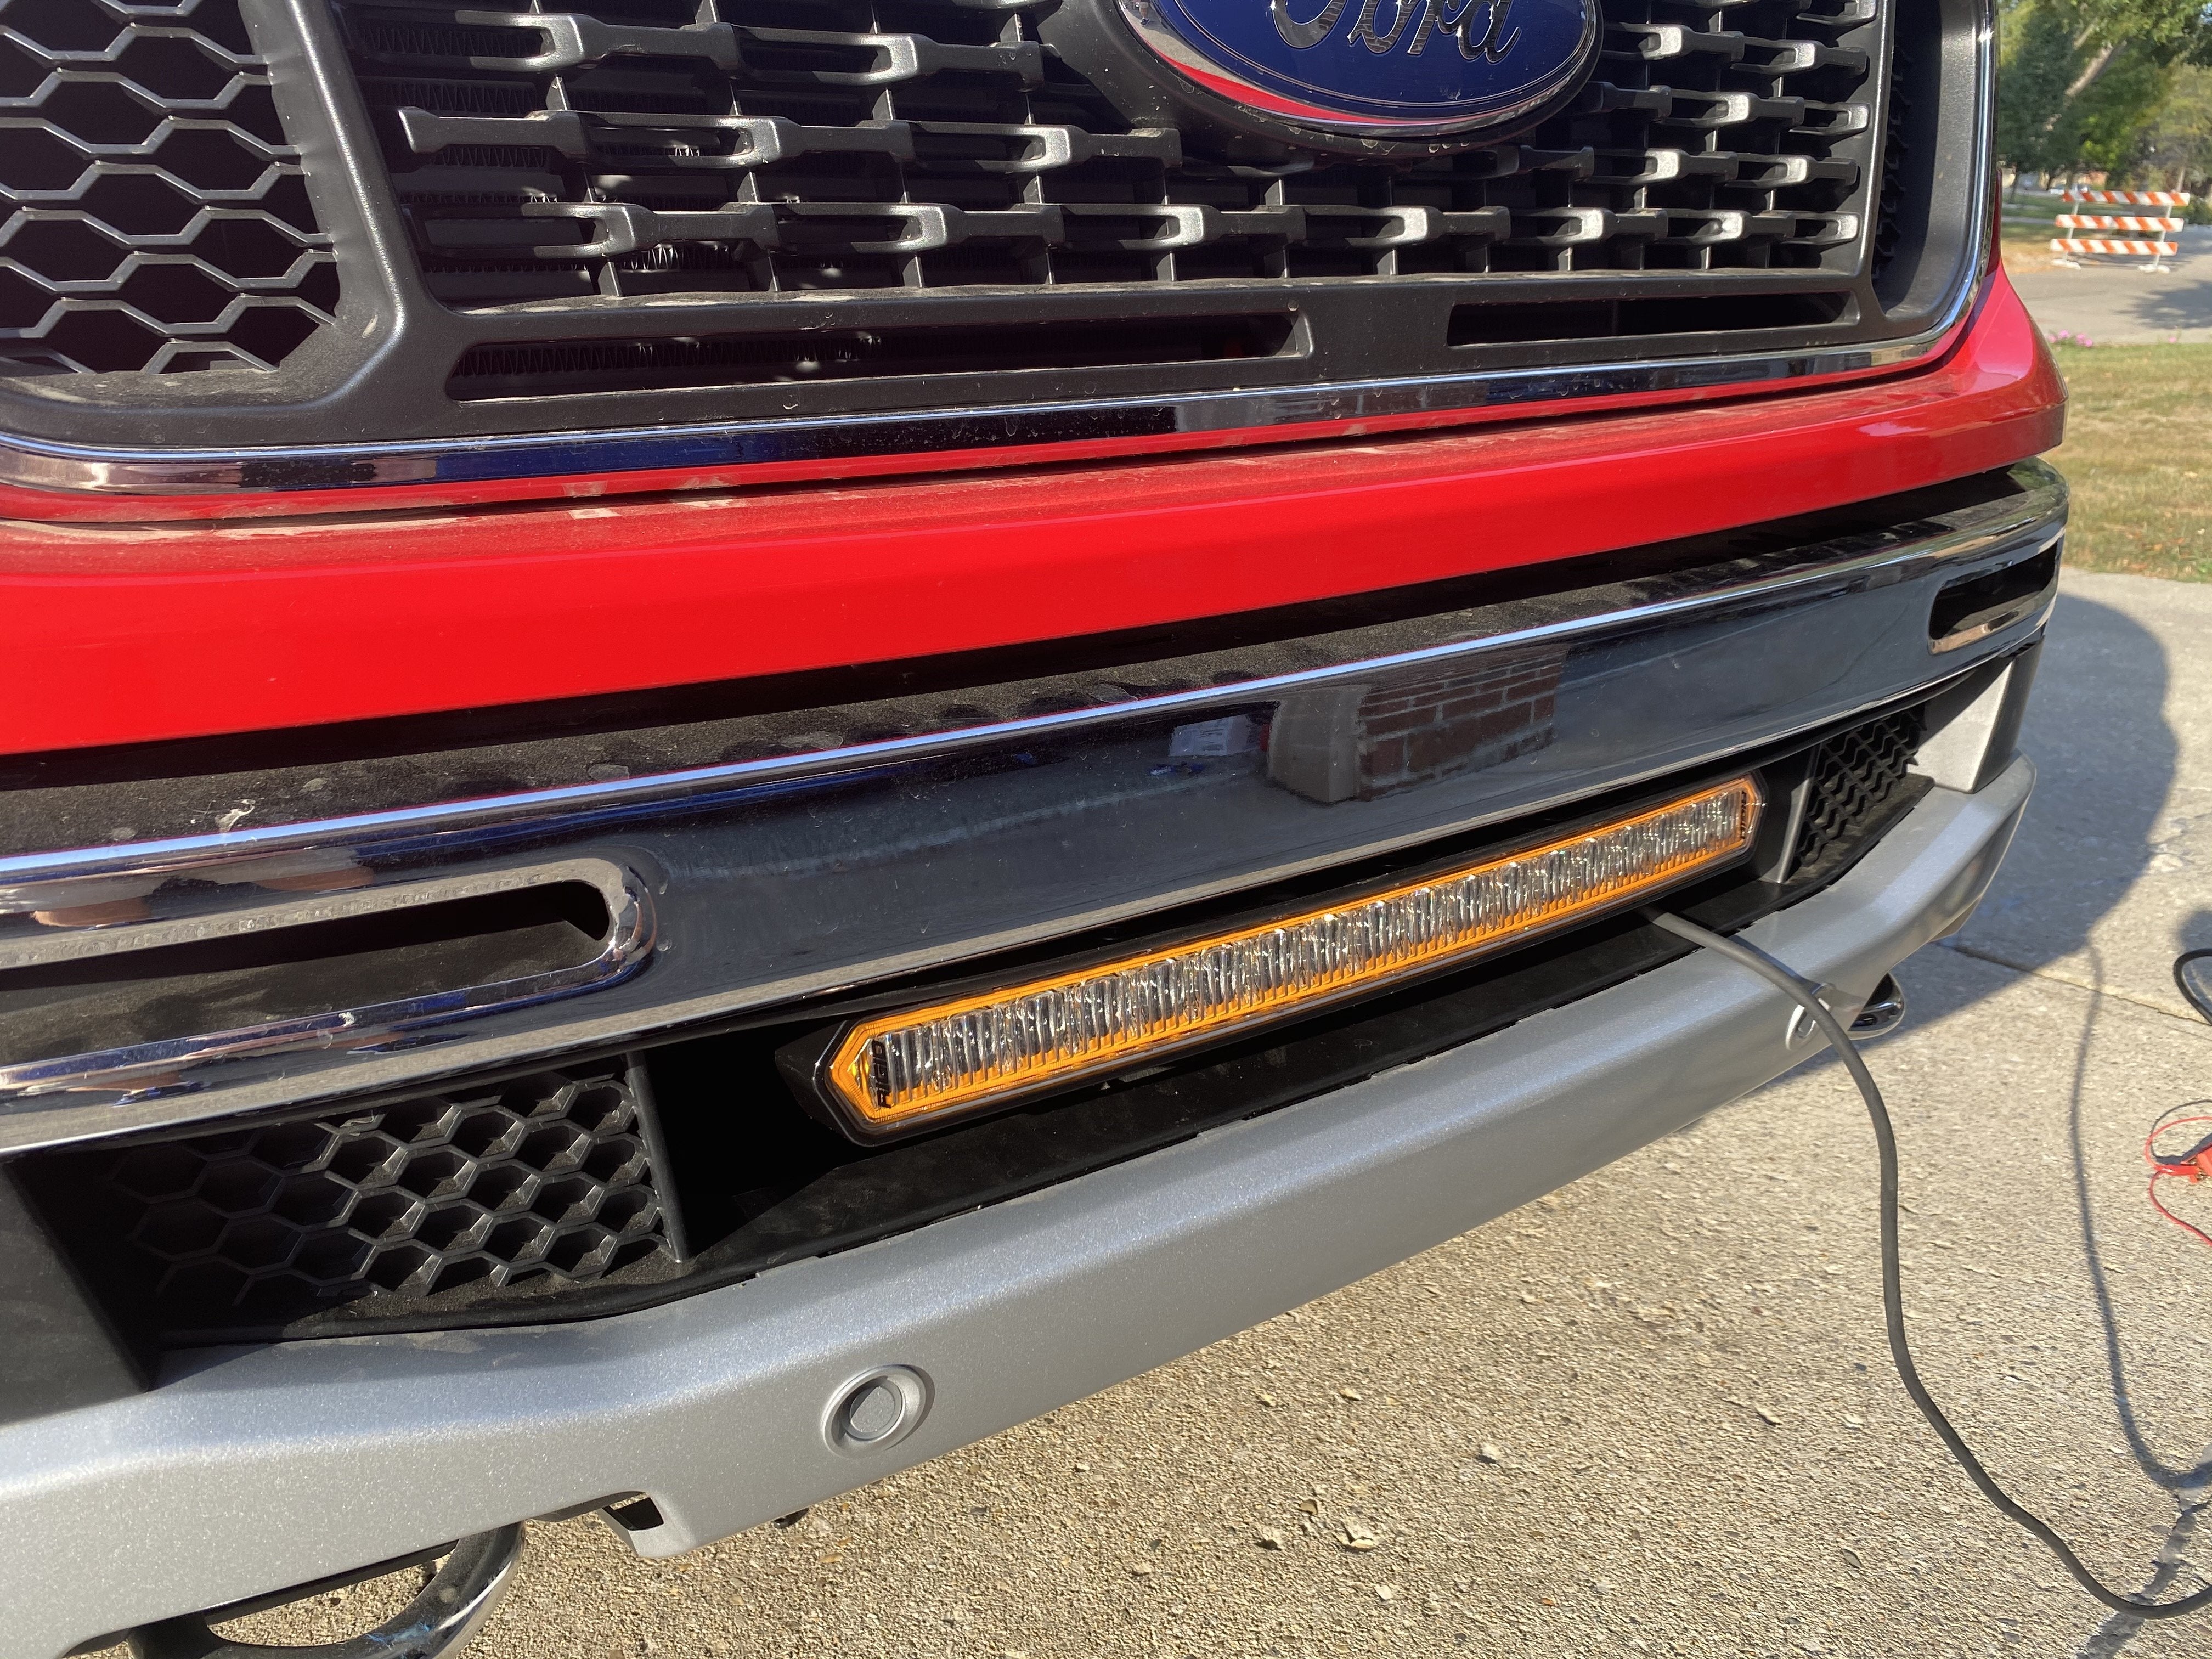 Ford Ranger 2019 bis 2022 Accessories und Tuning Zubehör